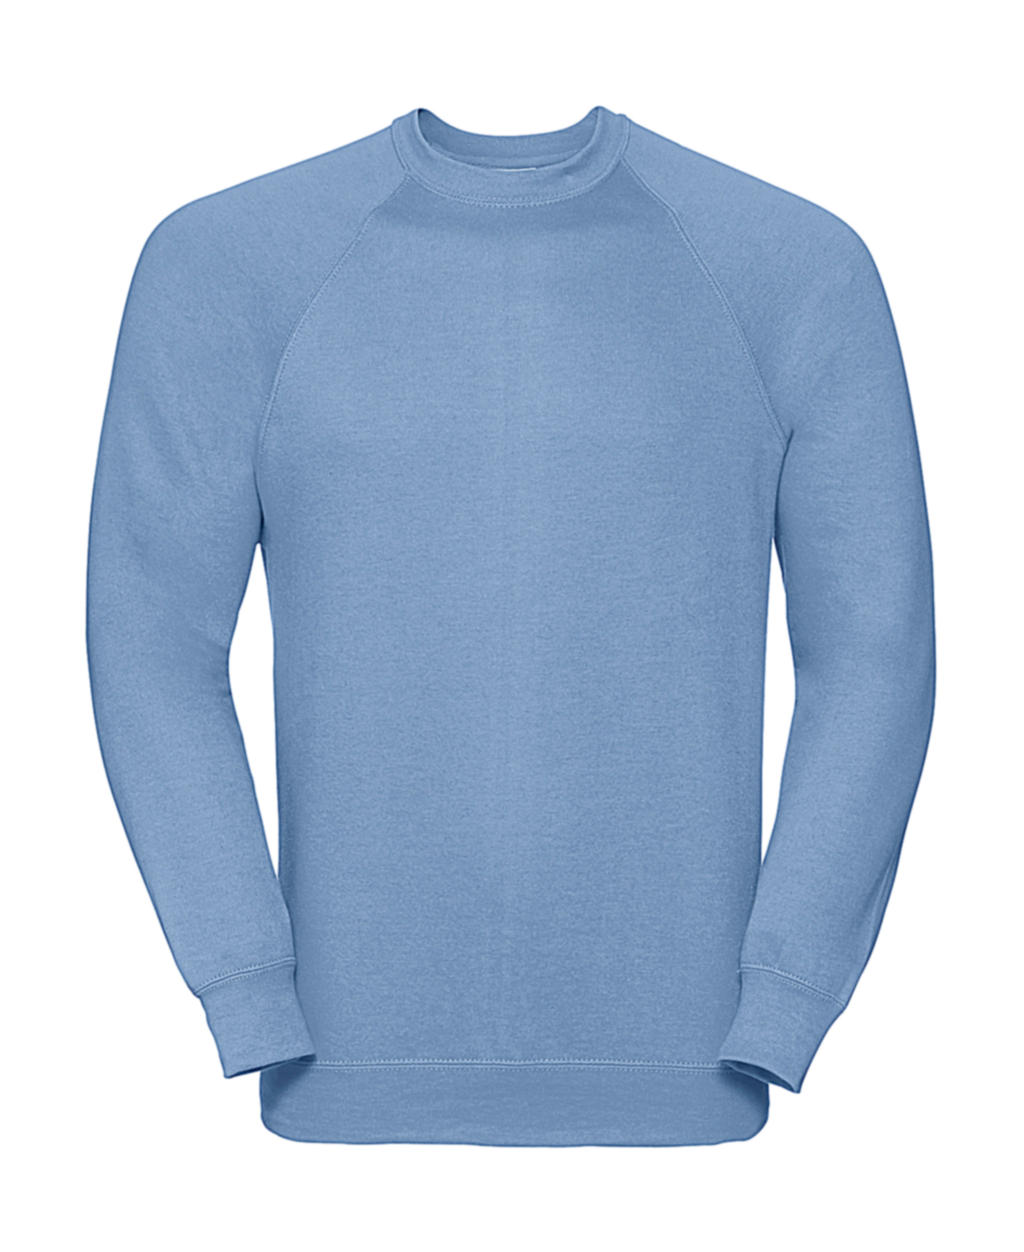  Classic Raglan Sweatshirt in Farbe Sky